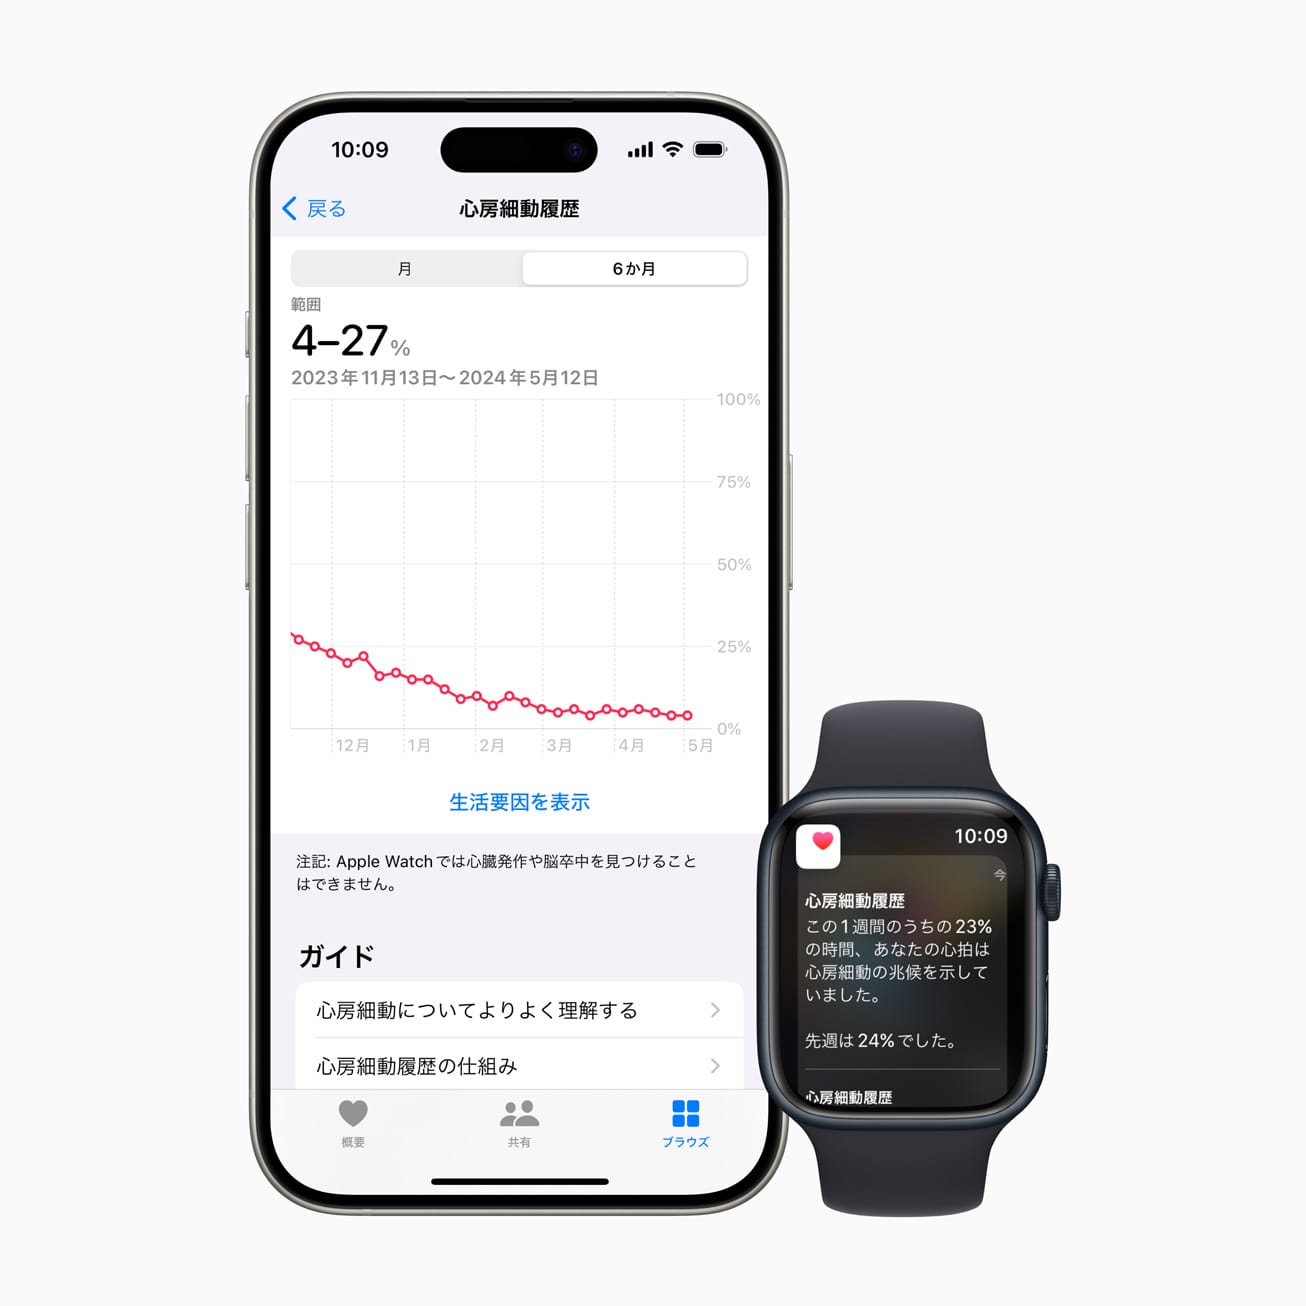 日本でApple Watchの心房細動履歴が利用可能に